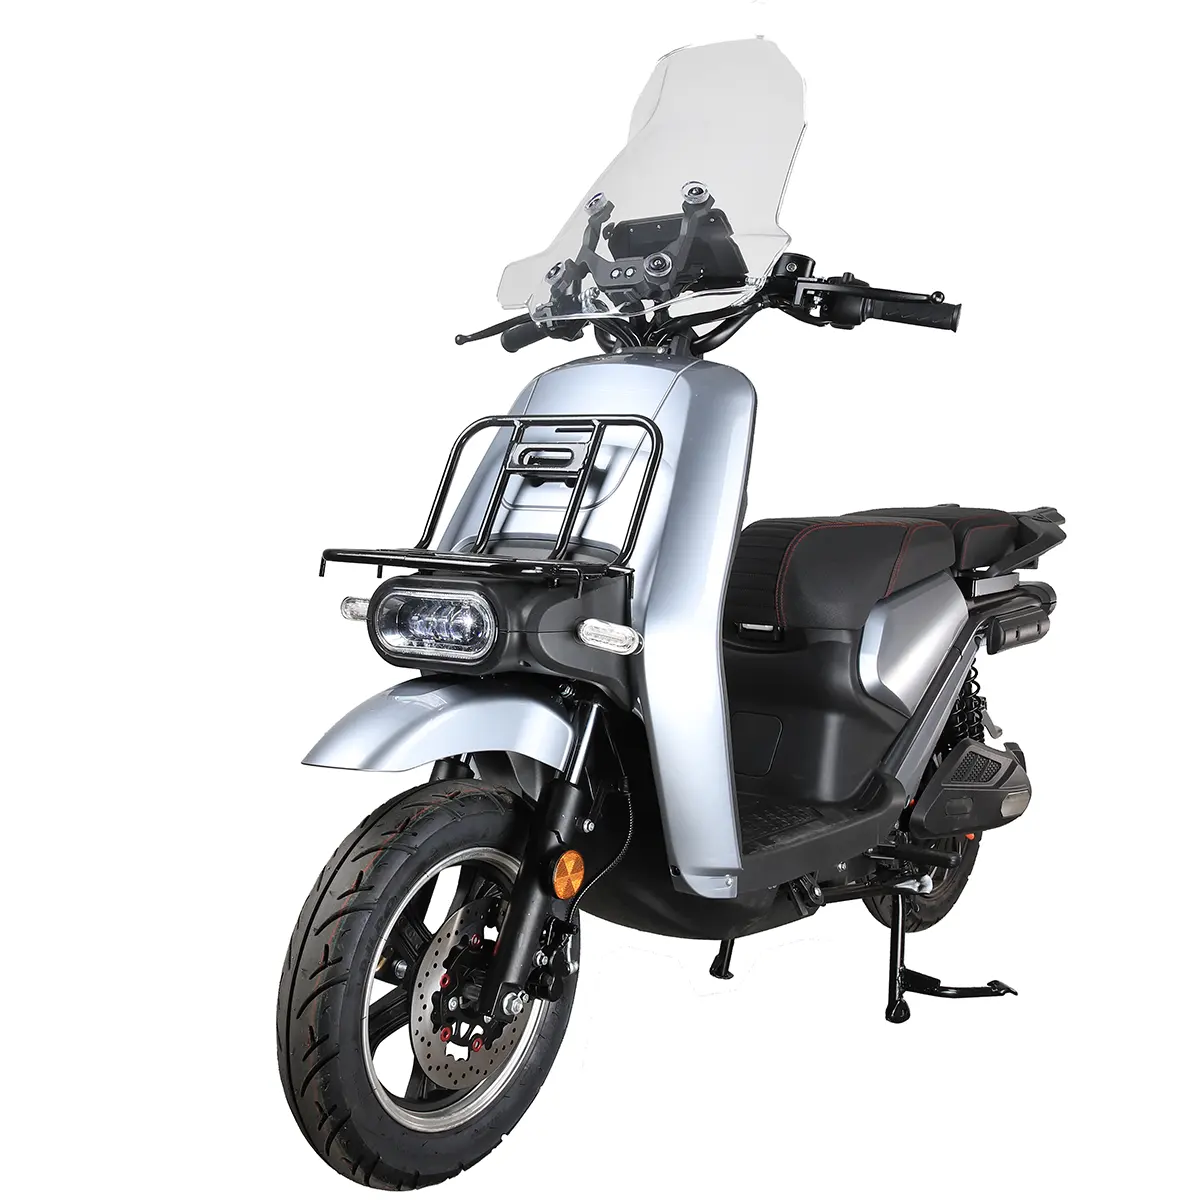 Certification CEE chaude 3000W haute vitesse 75 KM/h motos 72V40AH batterie au Lithium scooter électrique moto